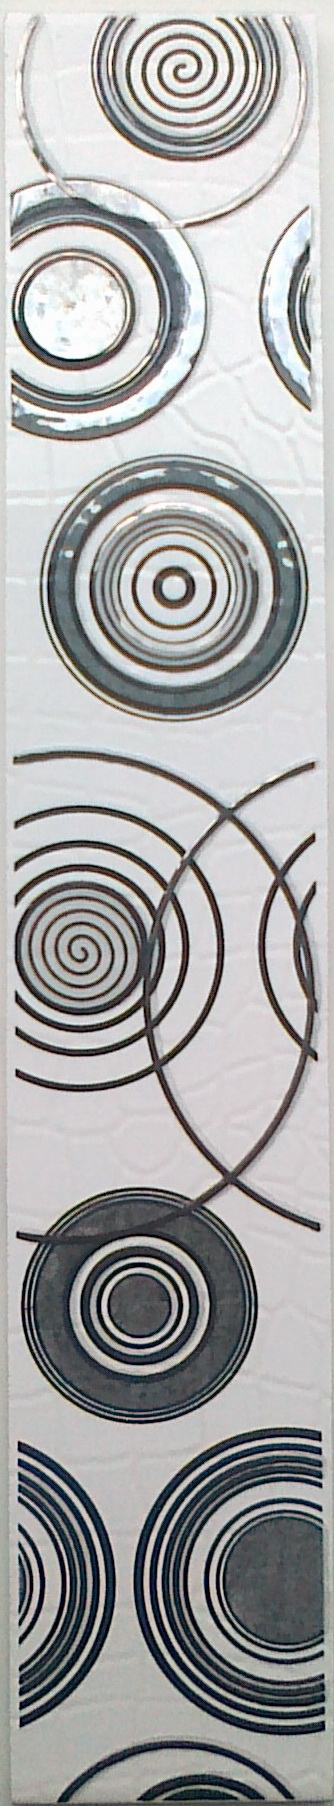 Каймен Голден тайл, Бордюр (фриз) керамический для коллекций керамической плитки в ассорт. 